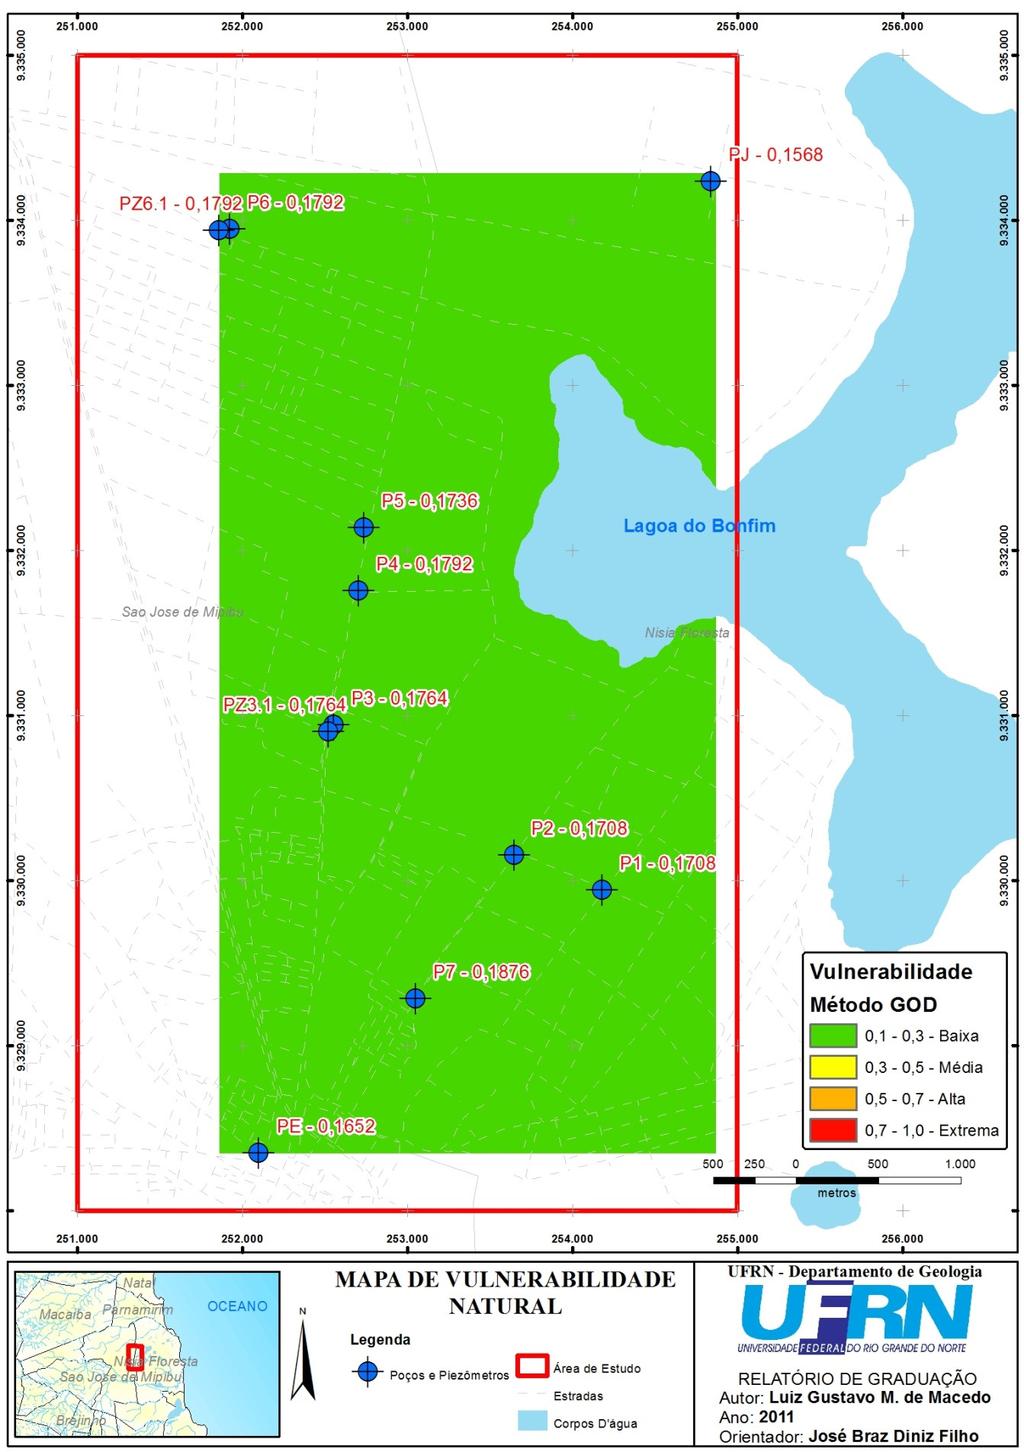 Figura 06: Mapa de vulnerabilidade natural à contaminação do aquífero Barreiras inferior semi-confinado, a oeste da Lagoa do Bonfim/Nísia Floresta-RN, segundo o Método de FOSTER & HIRATA (988).